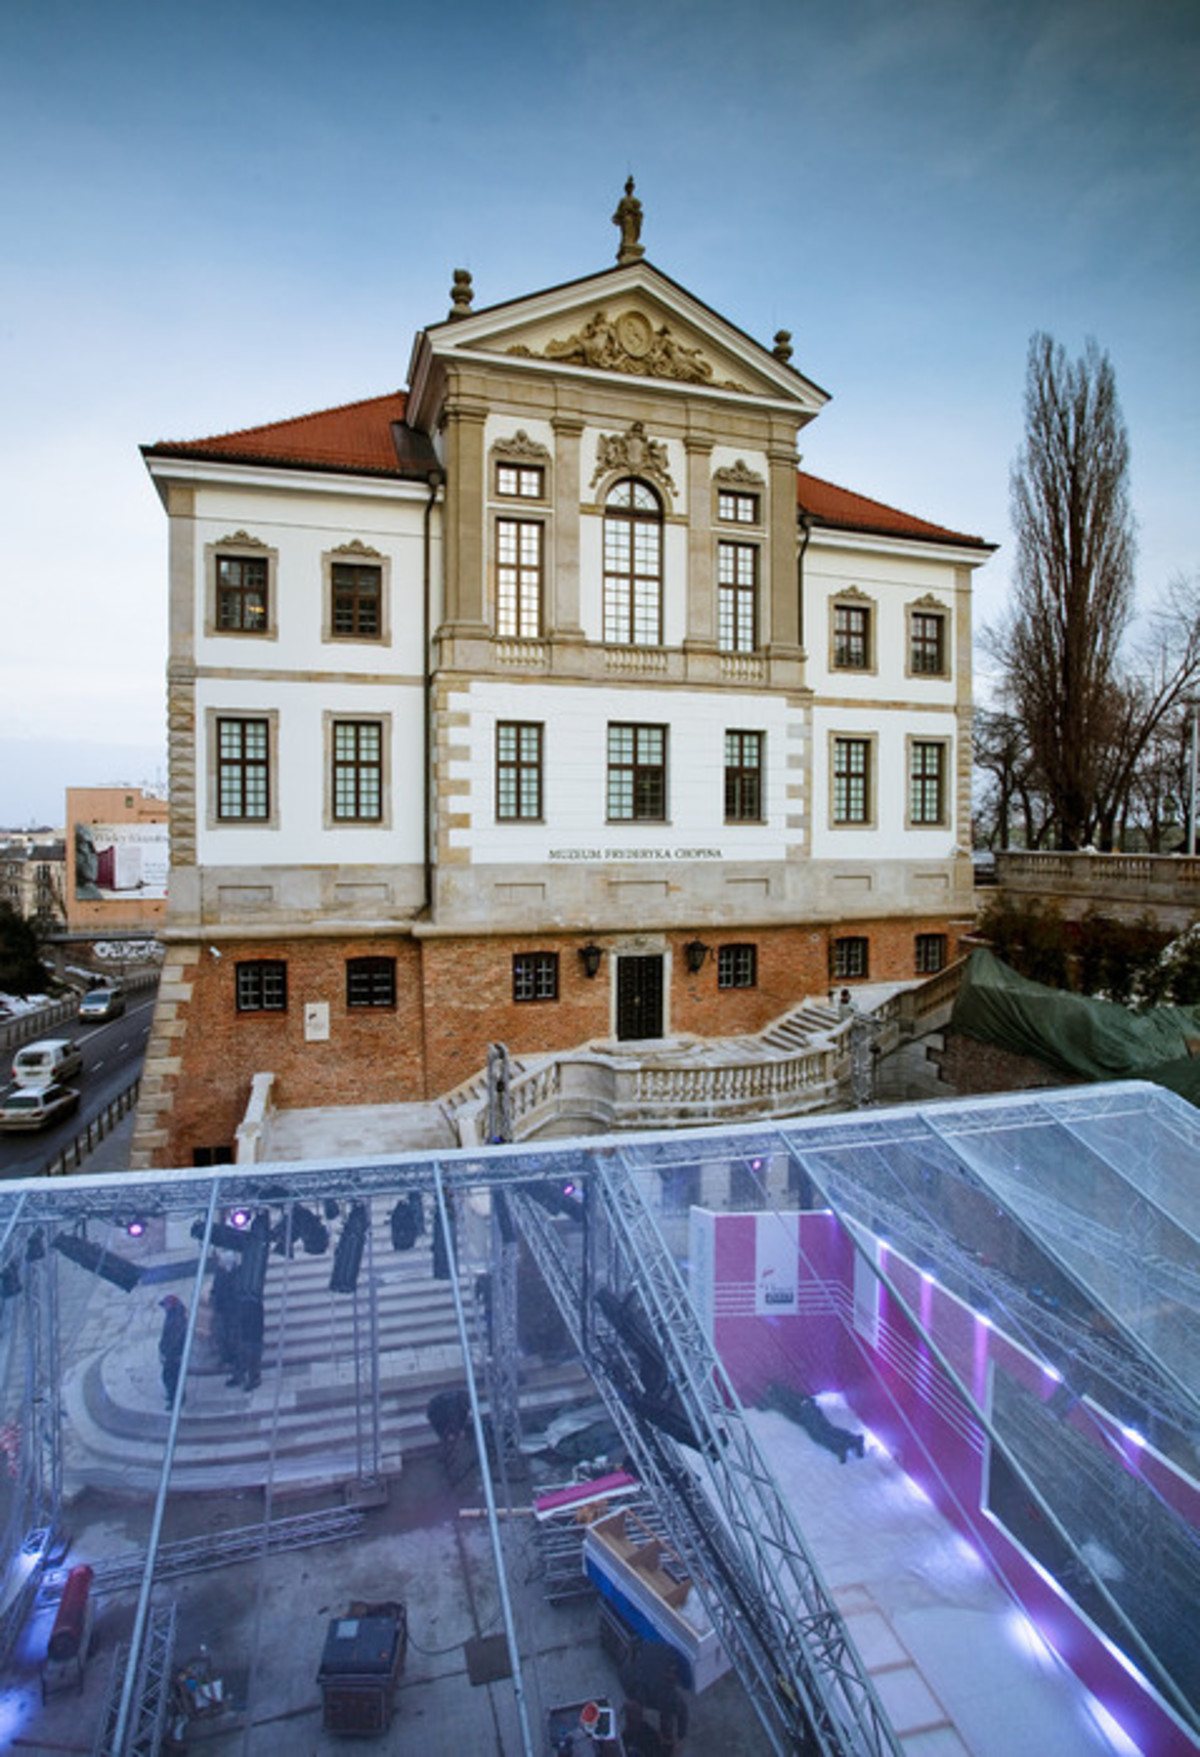 Muzeum Fryderyka Chopina i Centrum Chopinowskie w Warszawie 